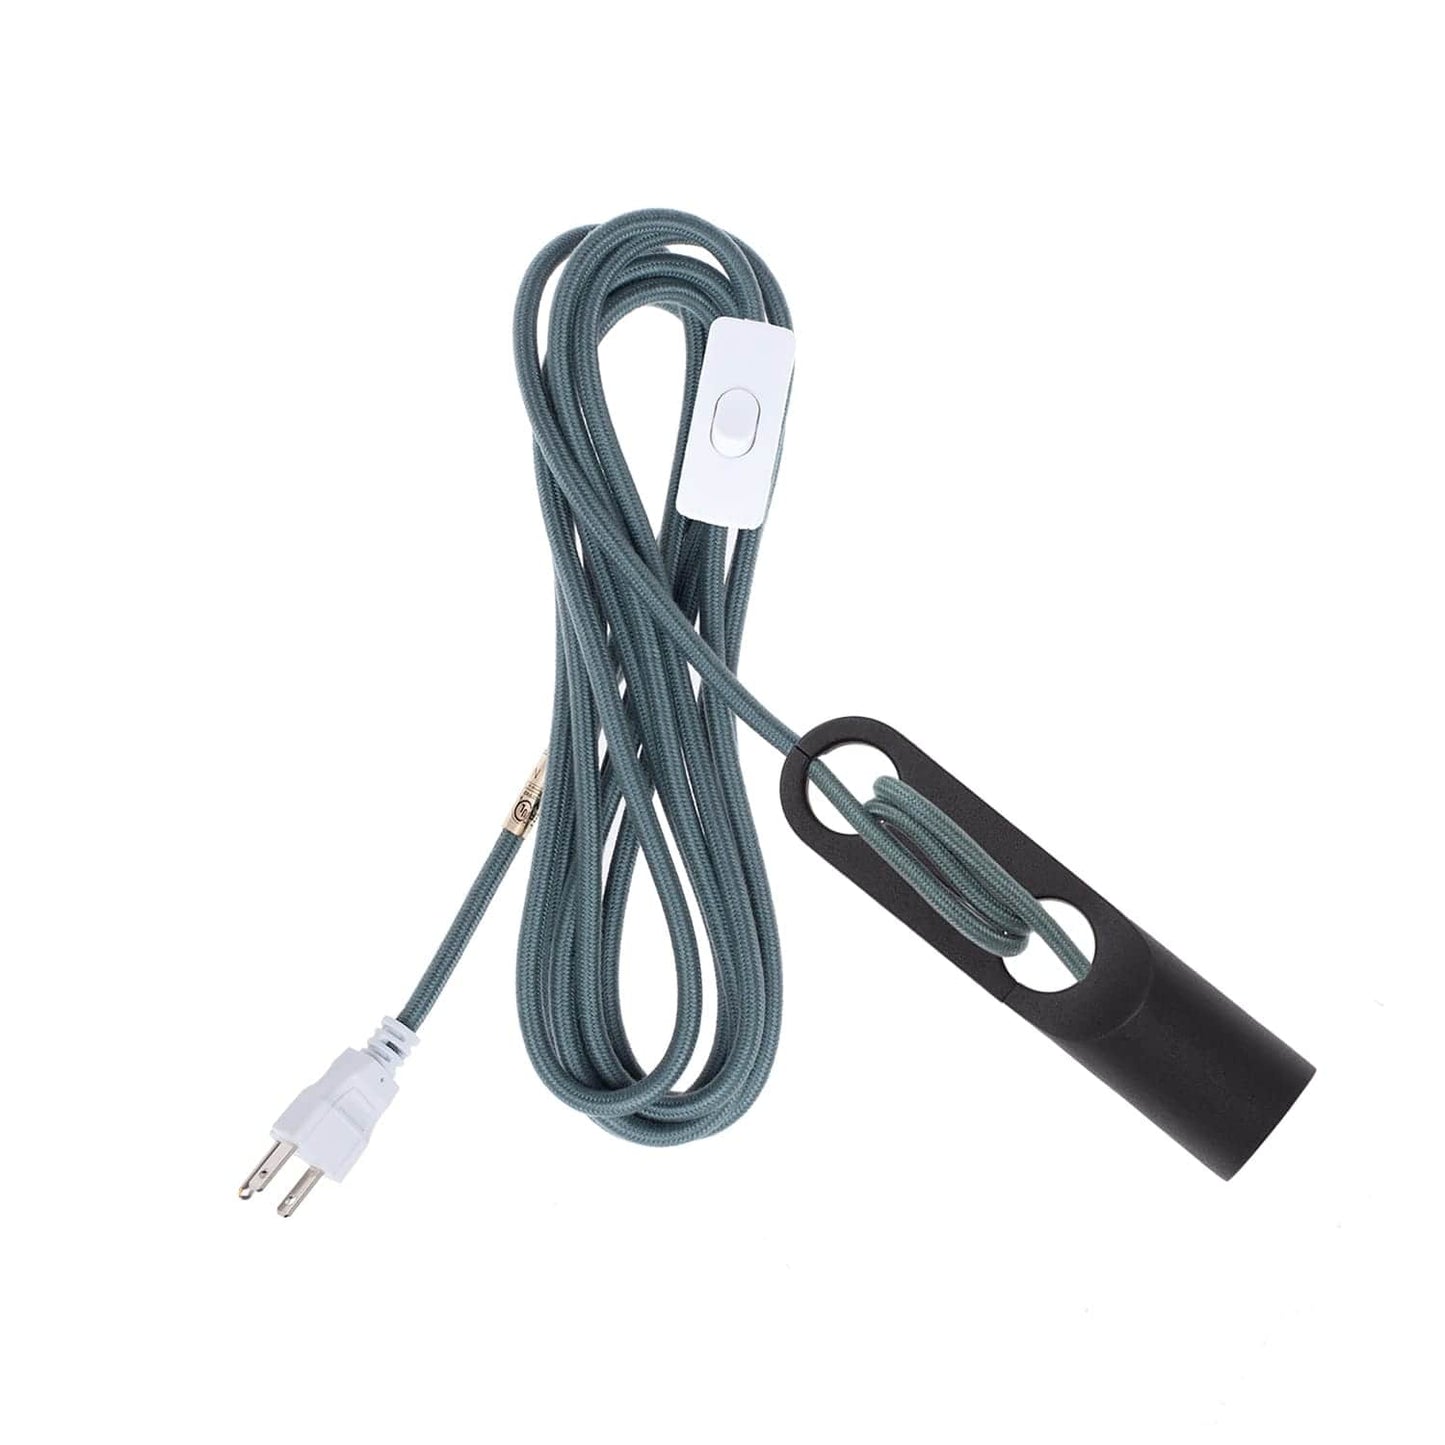 Customize: Wrap Plug-In Cord Set